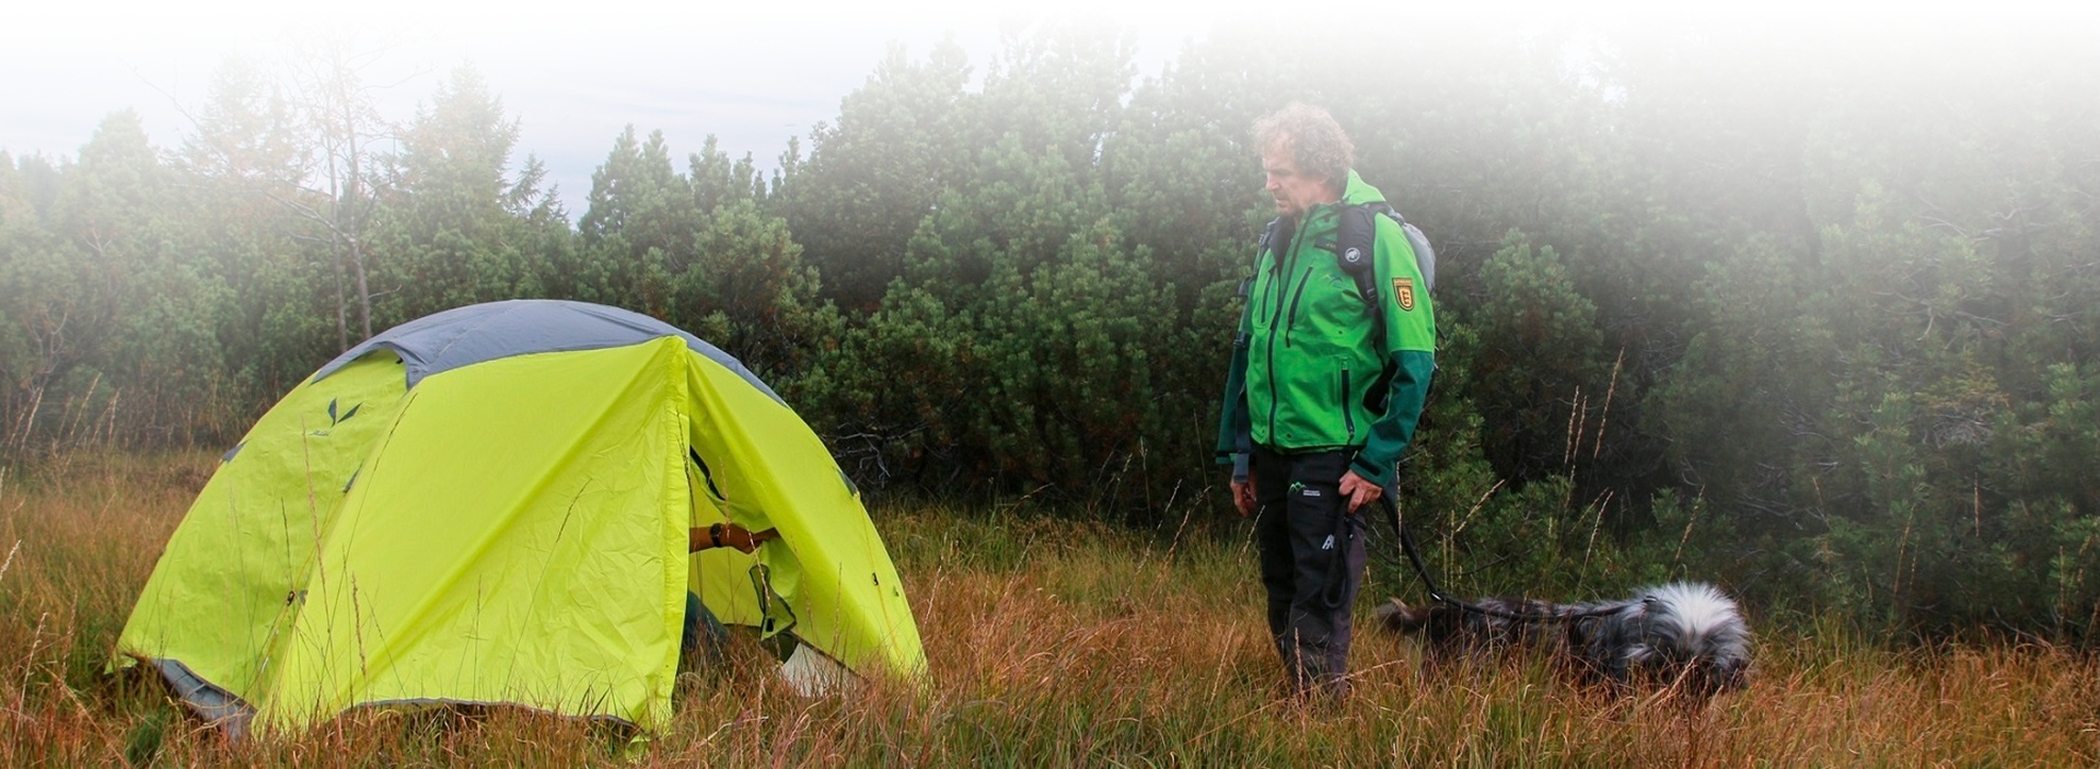 Ein Ranger steht vor einem Zelt, welches auf einer Wiese im Nationalpark steht. Dabei handelt es sich um Wild-campen was in einem Großschutzgebiet wie dem Nationalpark Schwarzwald nicht erlaubt ist.